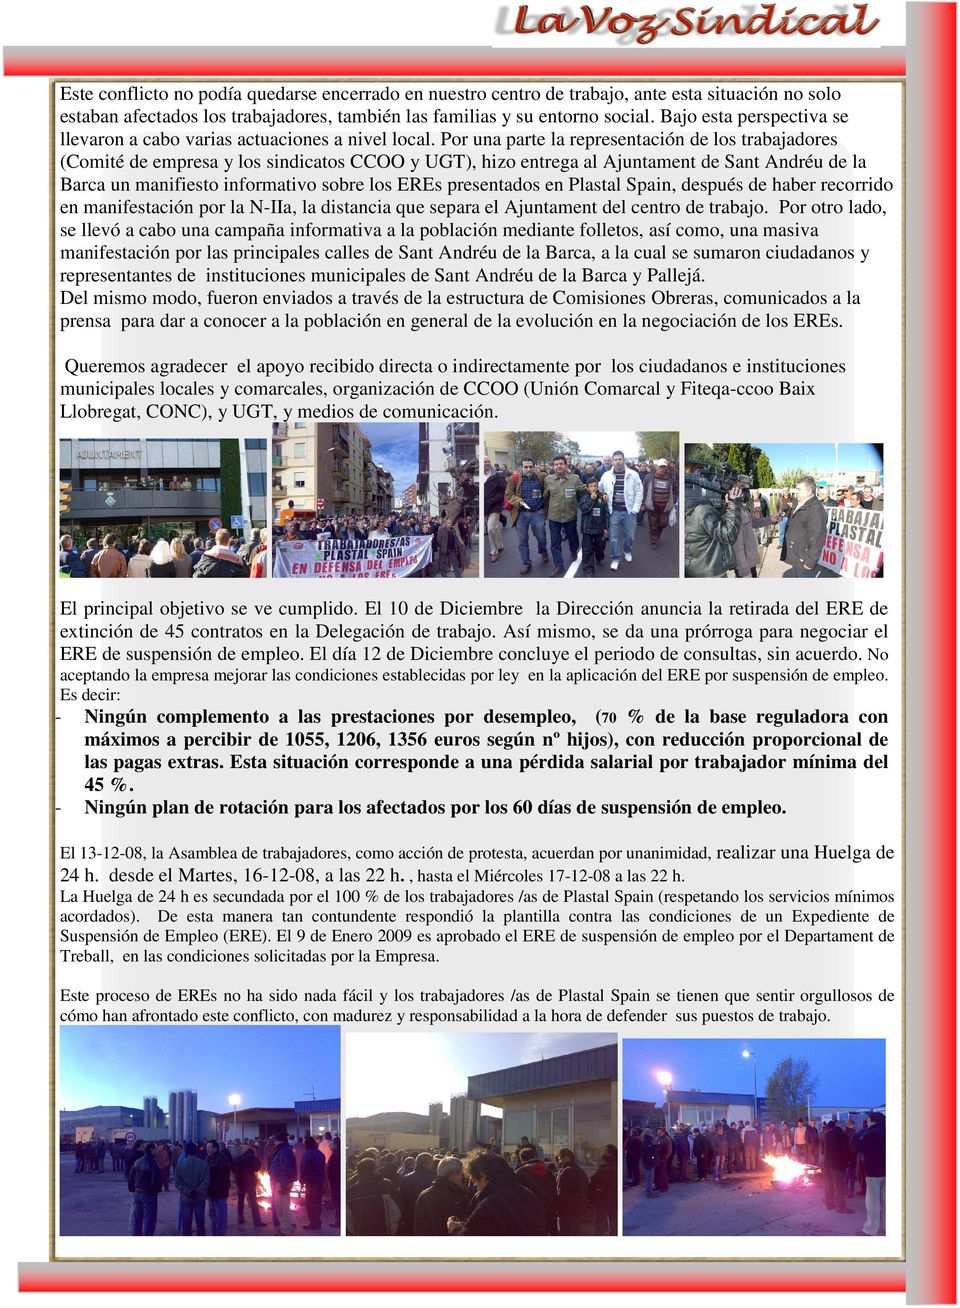 Por una parte la representación de los trabajadores (Comité de empresa y los sindicatos CCOO y UGT), hizo entrega al Ajuntament de Sant Andréu de la Barca un manifiesto informativo sobre los EREs